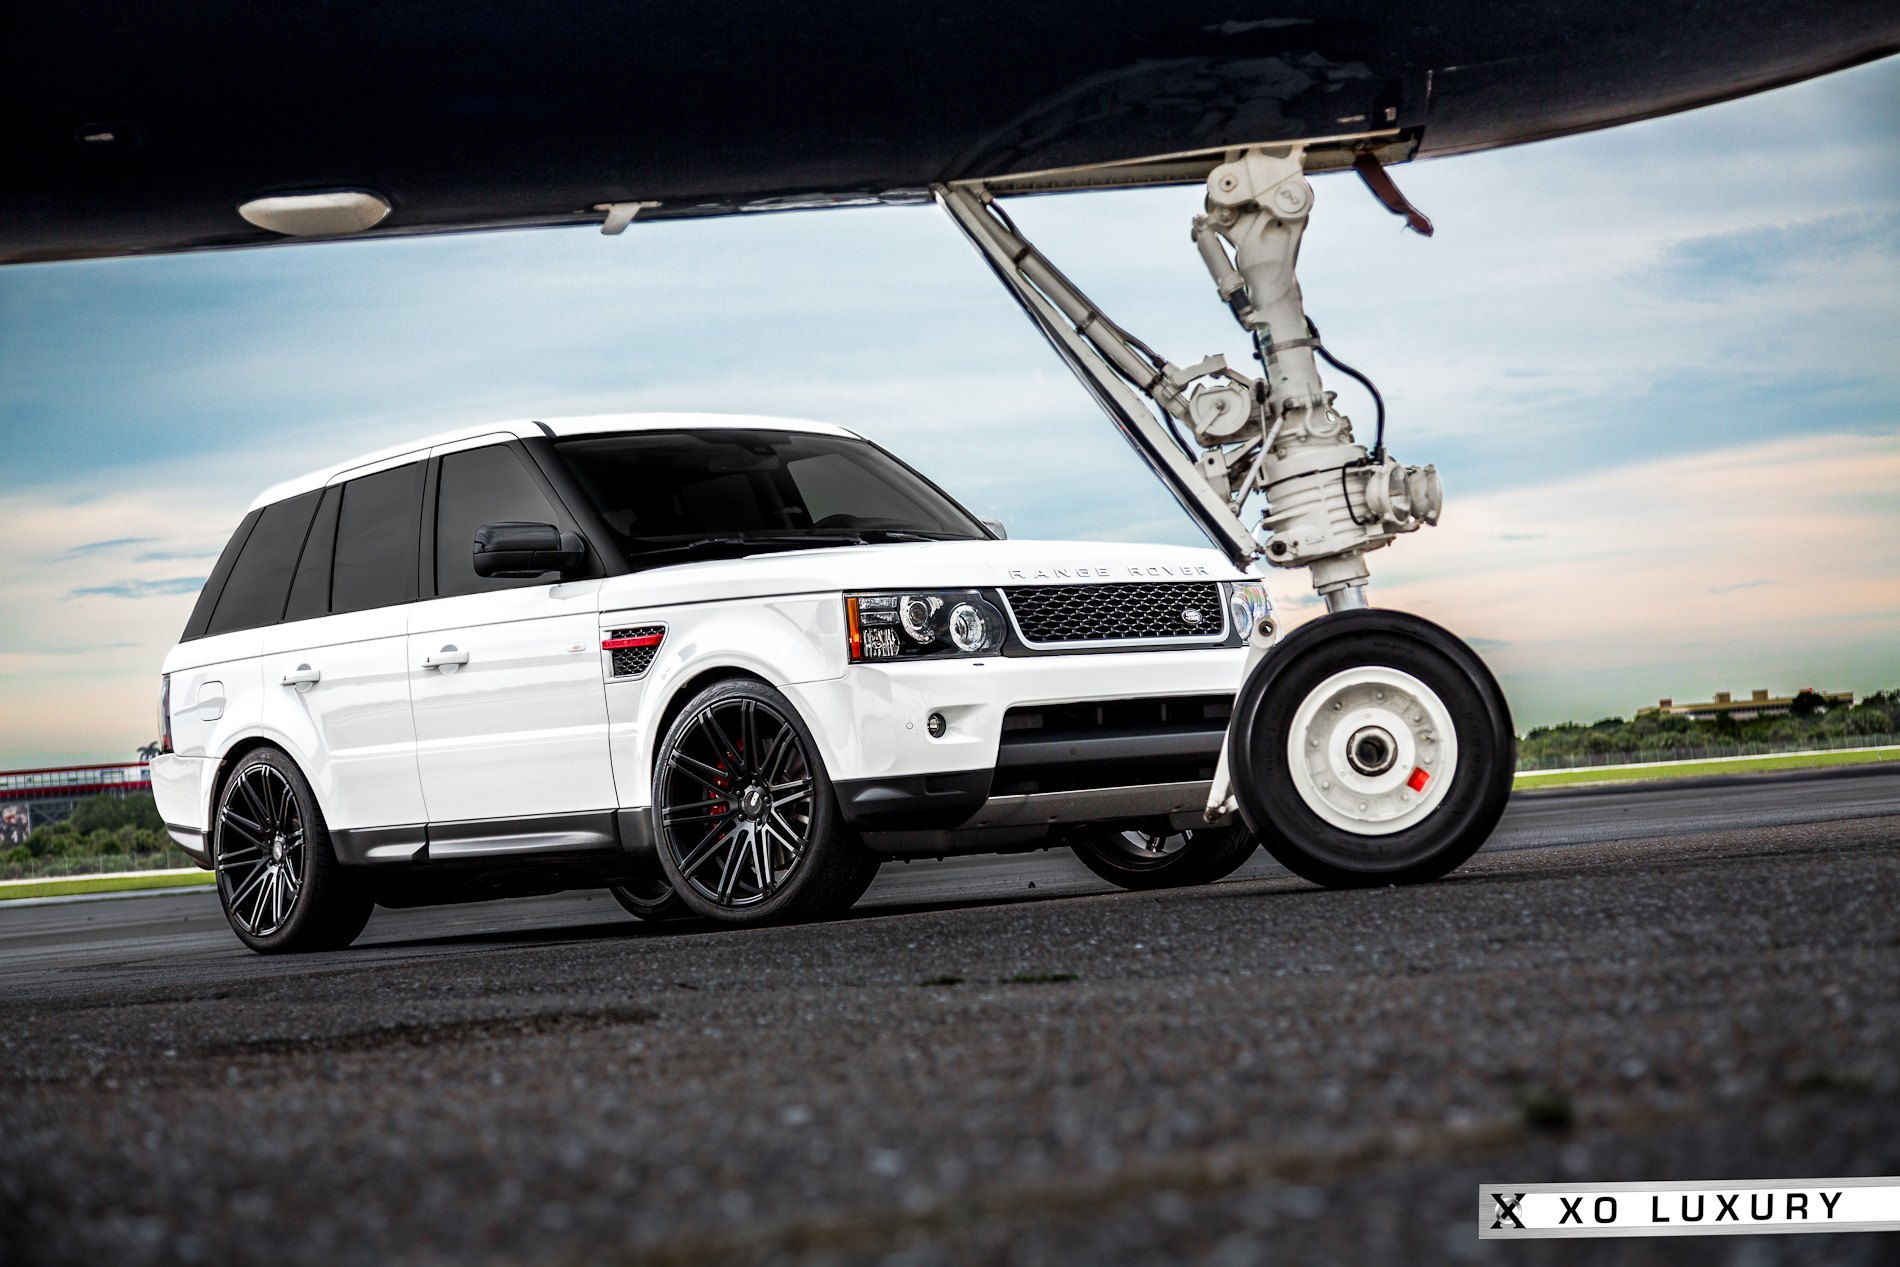 Milan Matte Black XO Luxury Rims On White Range Rover Sport - Photo by XO Luxury